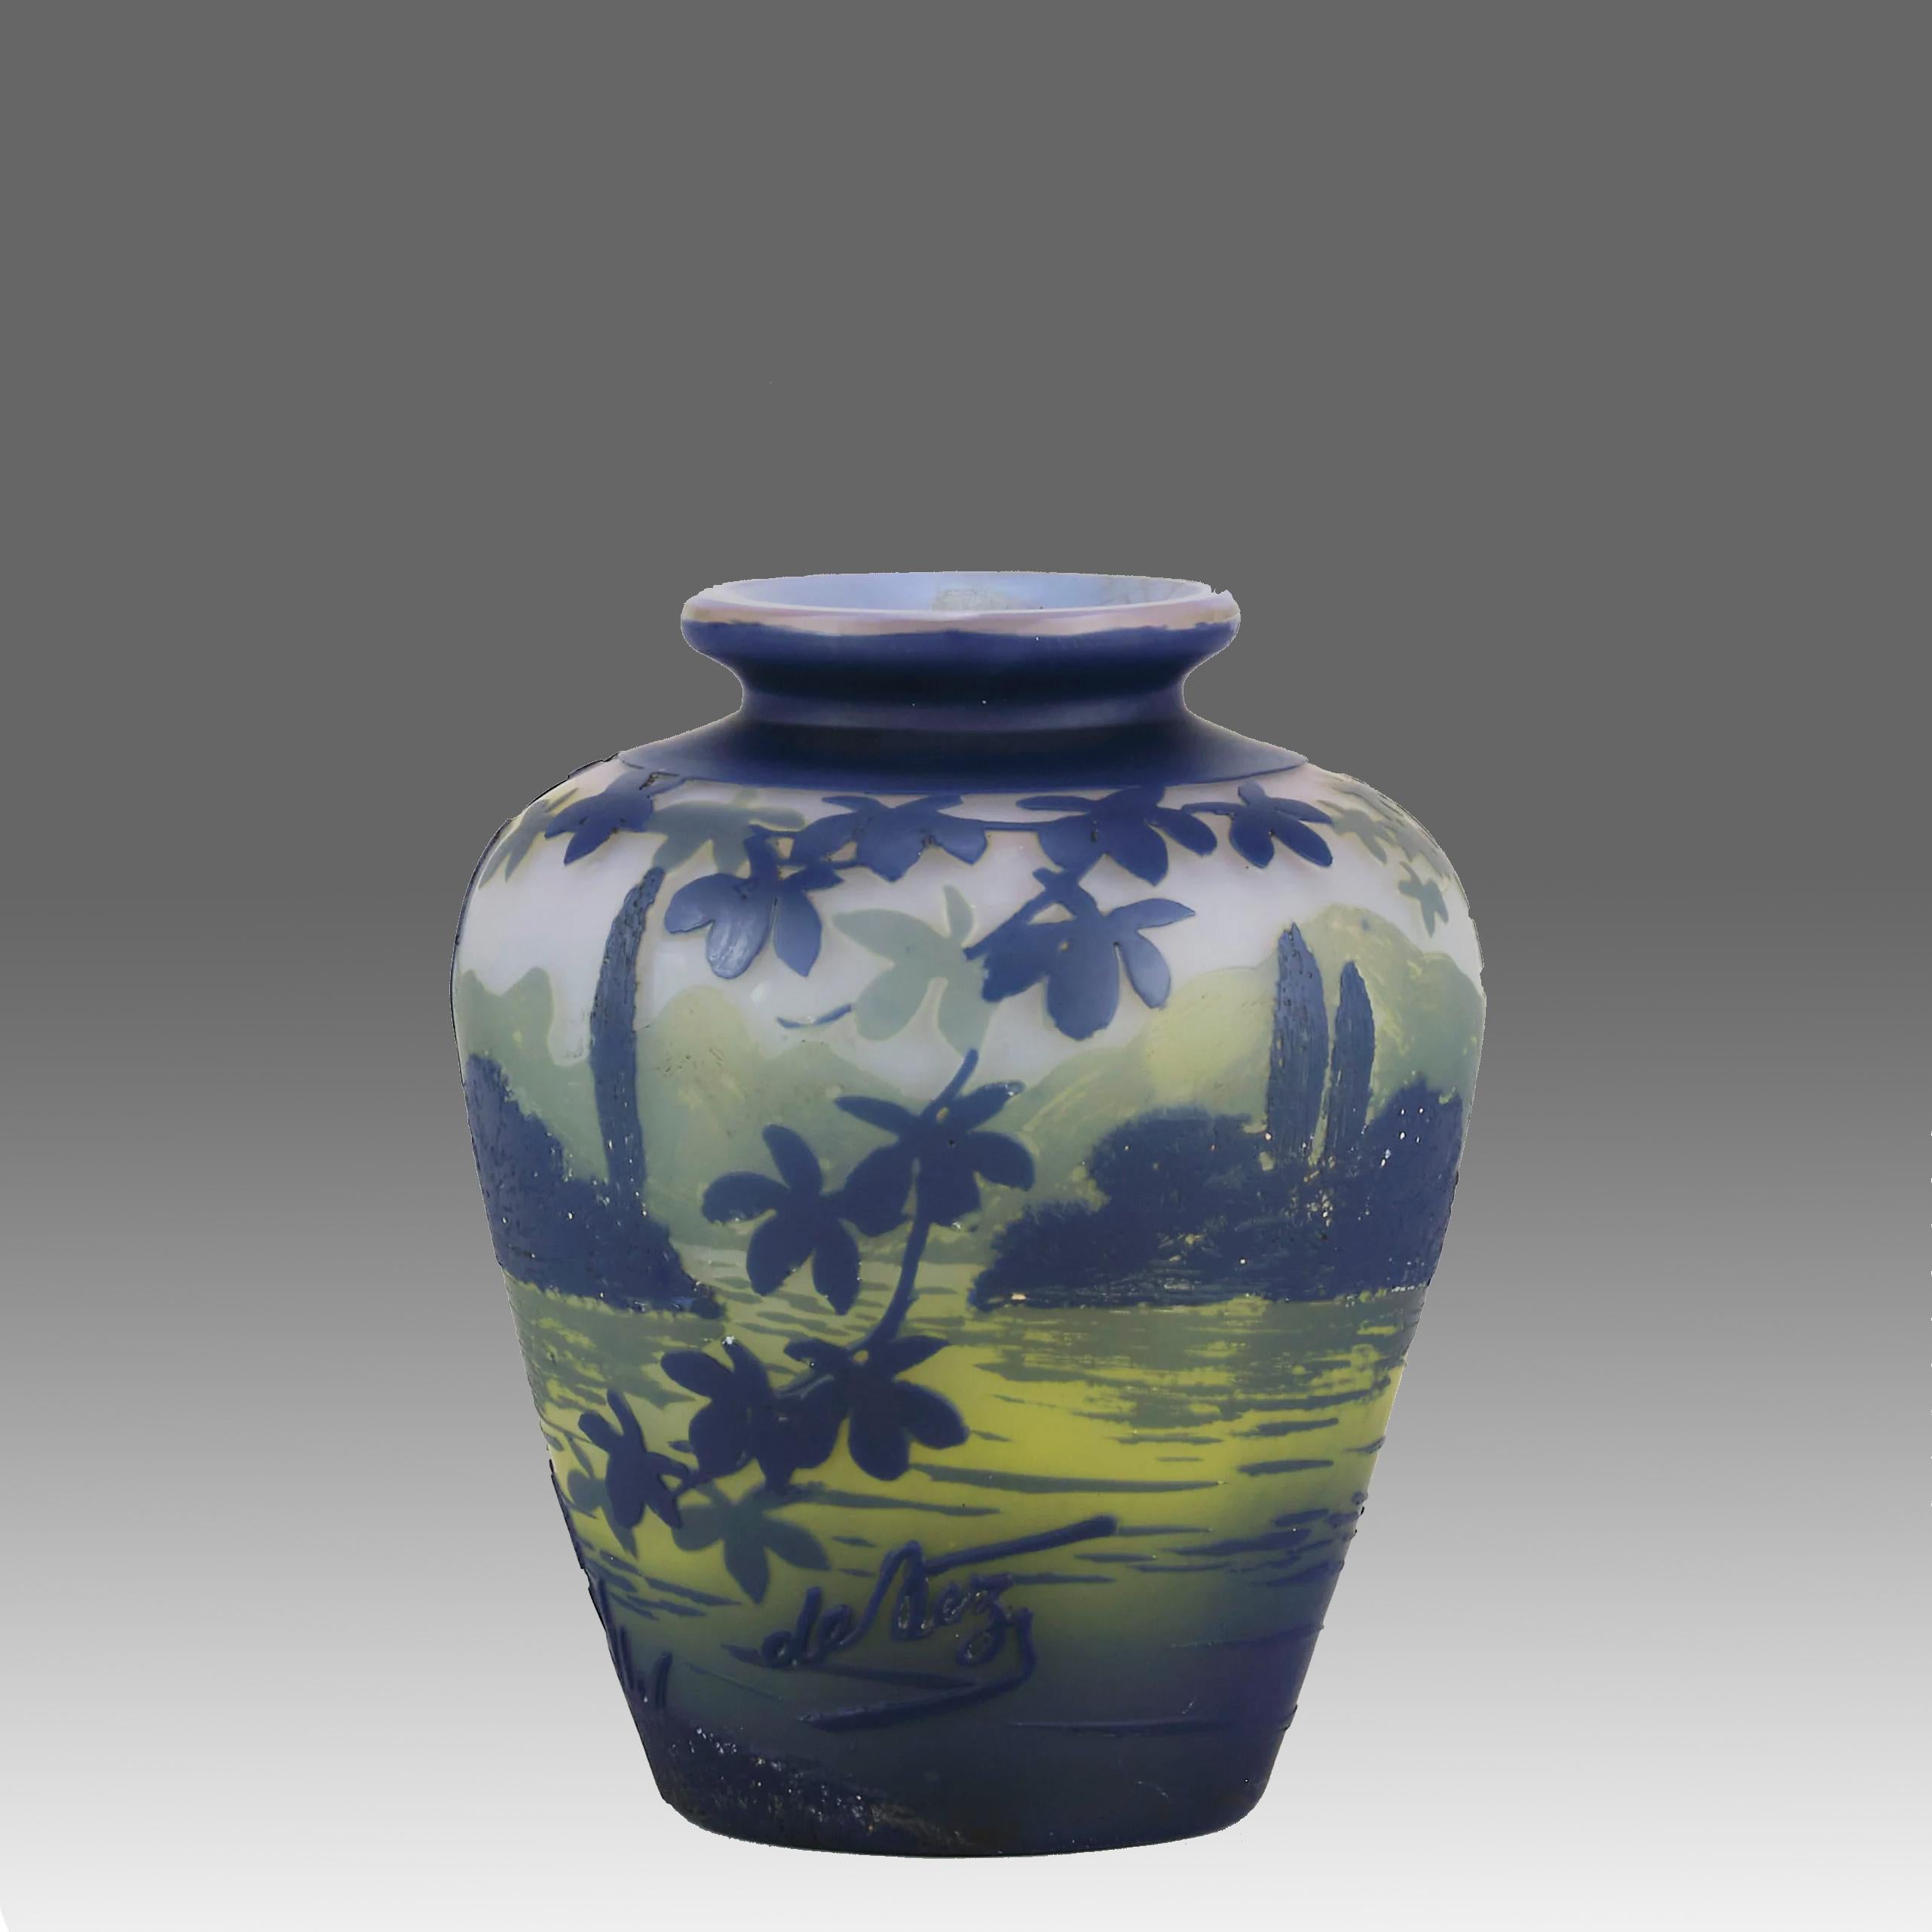 Un joli vase en verre camée du début du 20e siècle, taillé à l'acide et gravé à la main d'un paysage lacustre d'un bleu profond sur un champ vert avec un arrière-plan montagneux, présentant d'excellents détails finis à la main, signé De Vez.

